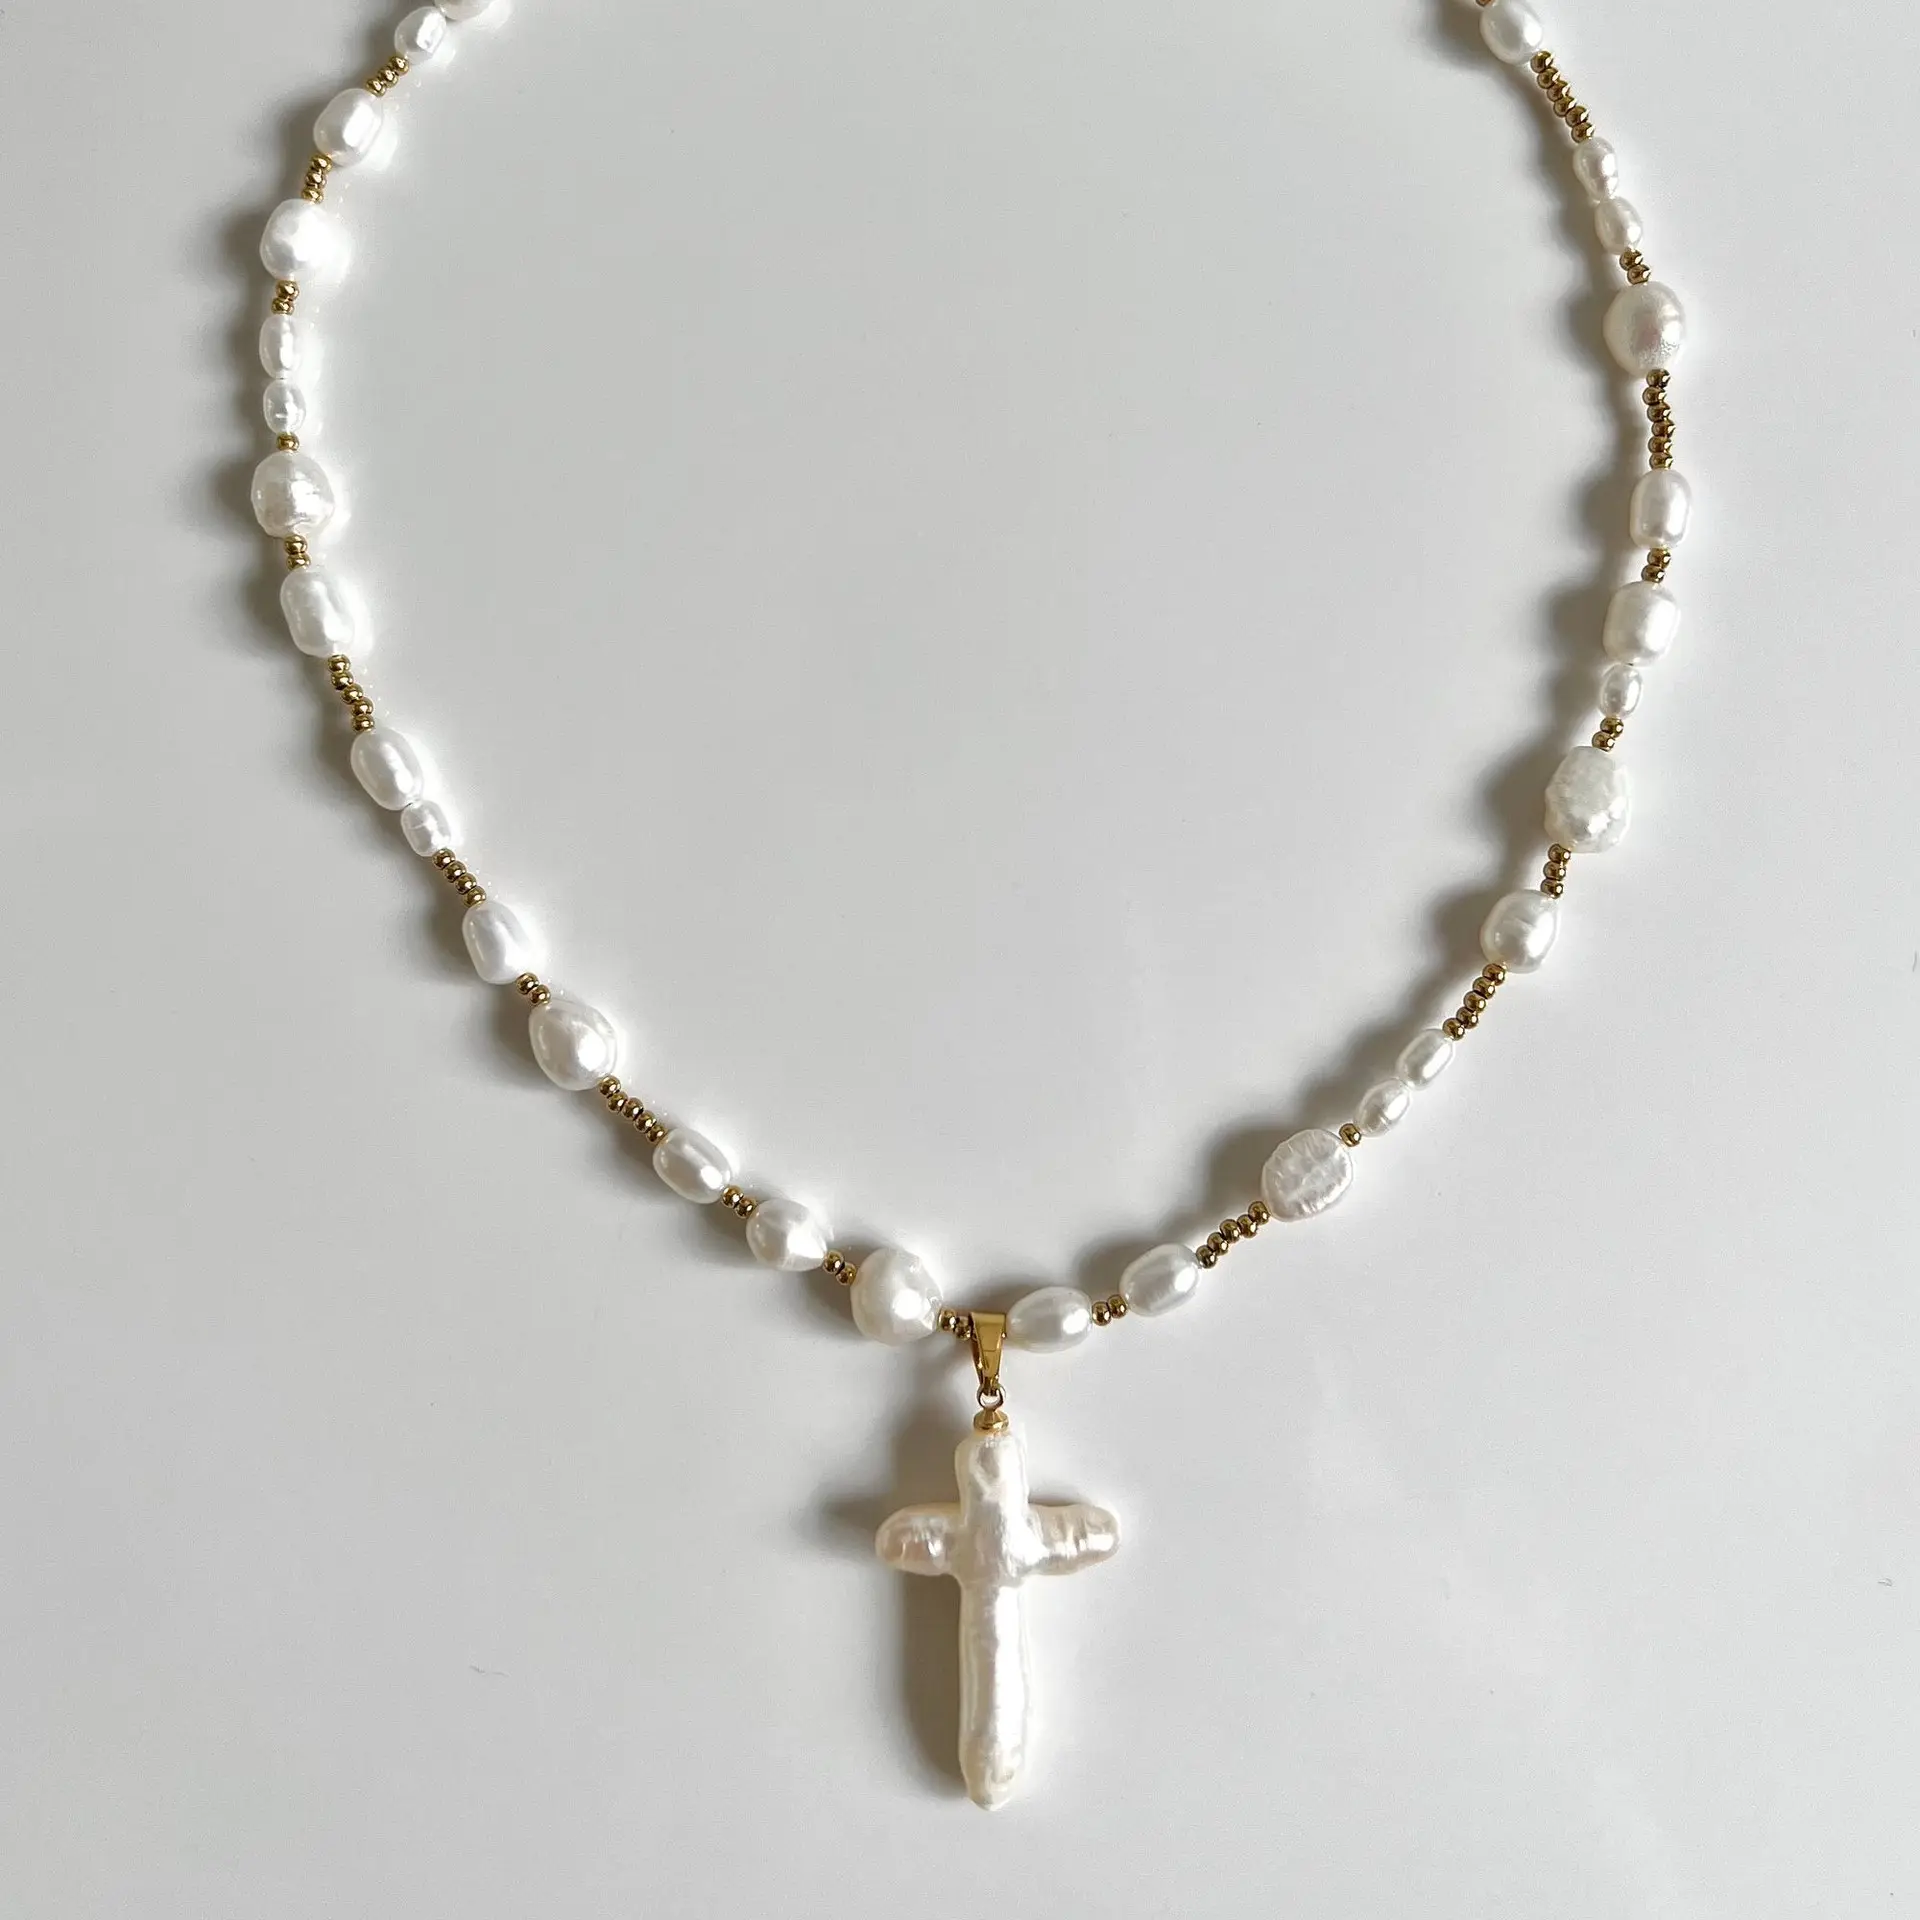 Vintage vergoldete Edelstahl Kreuz Choker Halskette unregelmäßige Barock Perle Kreuz Anhänger Halskette für Frauen